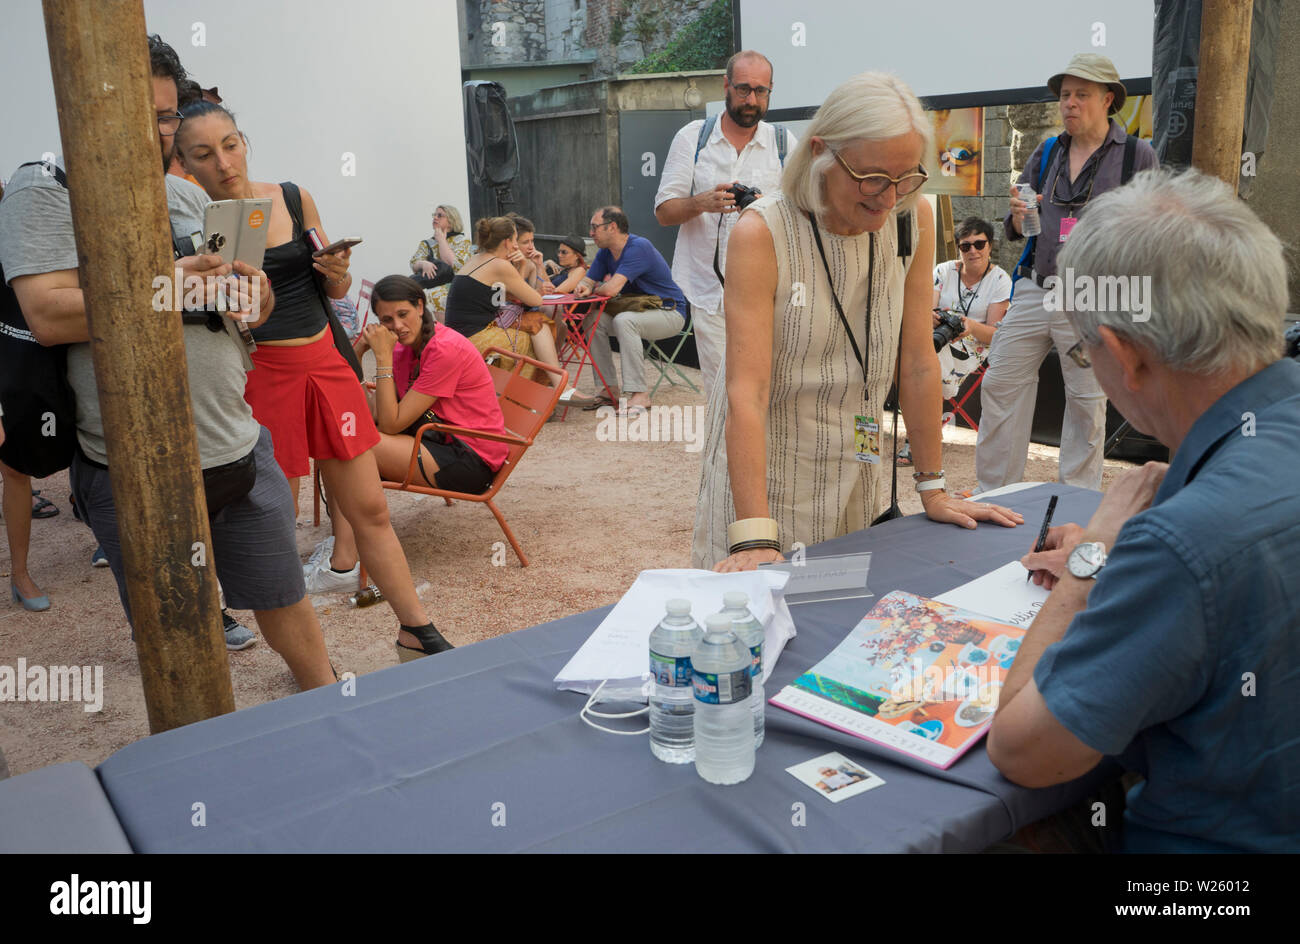 Premiato fotografo inglese Martin Parr libri di firma al Rencontres d'Arles famoso internazionale annuale del festival della fotografia sul suo cinquantesimo anniversario nella città di Arles nel sud della Francia Foto Stock